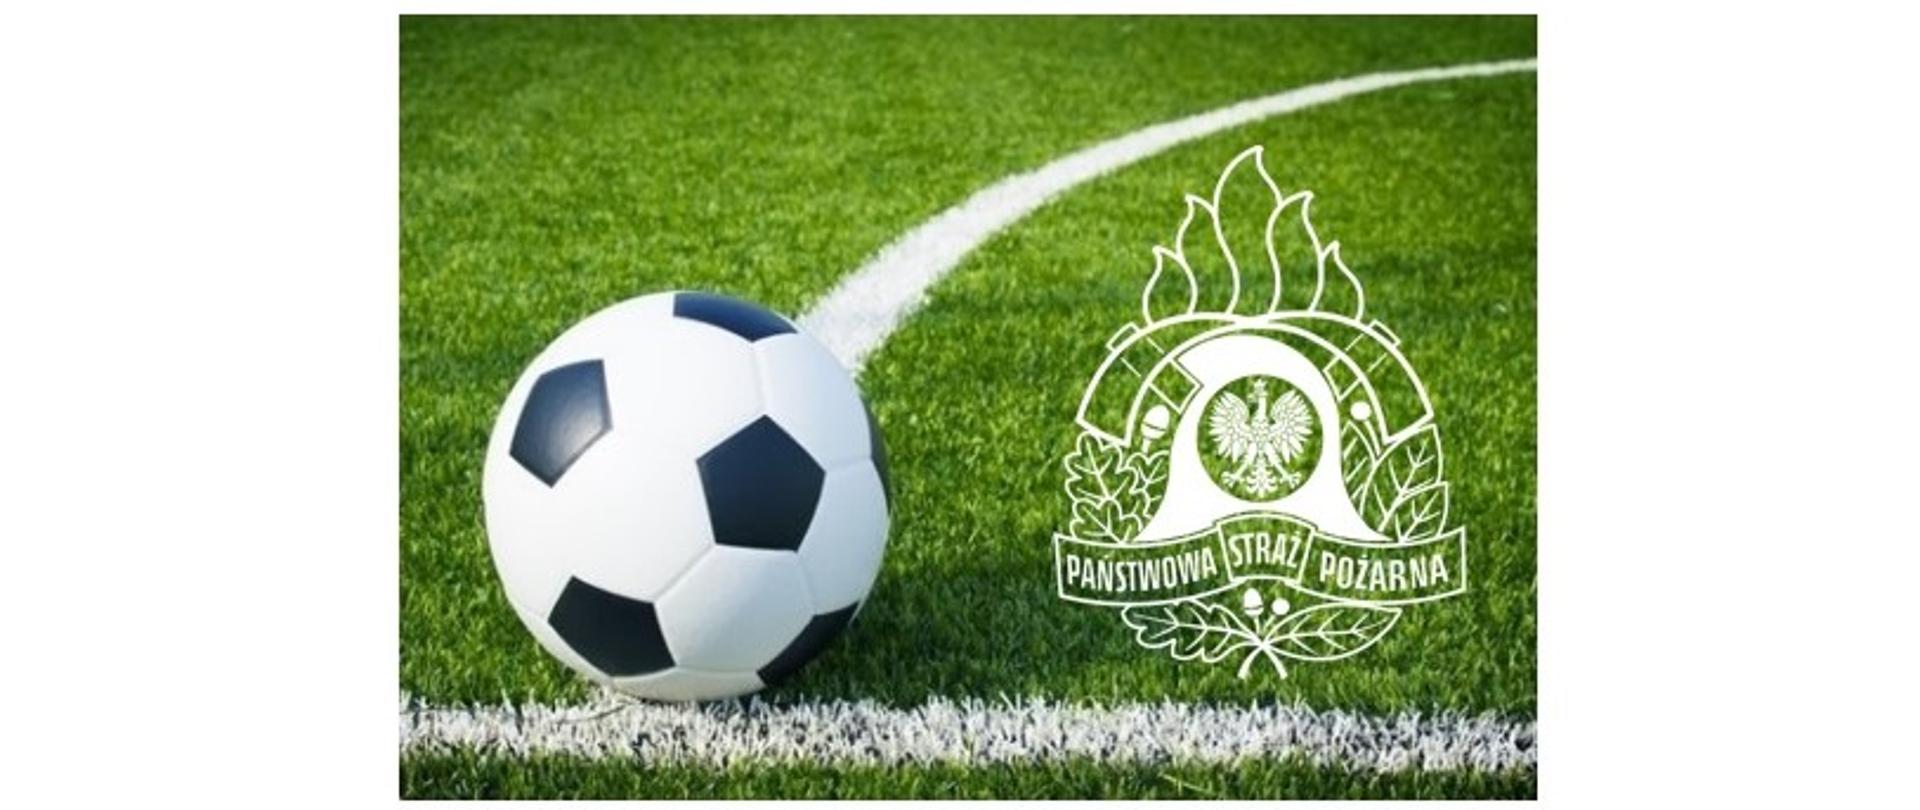 Zdjęcie przedstawia z prawej strony logo Państwowej Straży Pożarnej, a z lewej piłkę do gry w piłkę nożną z czarno-białymi łatami, która znajduje się na części trawiastego boiska piłkarskiego oznaczonego liniami. Obraz nawiązuje do IV Turniej Piłki Nożnej o Puchar Warmińsko–Mazurskiego Komendanta Wojewódzkiego Państwowej Straży Pożarnej